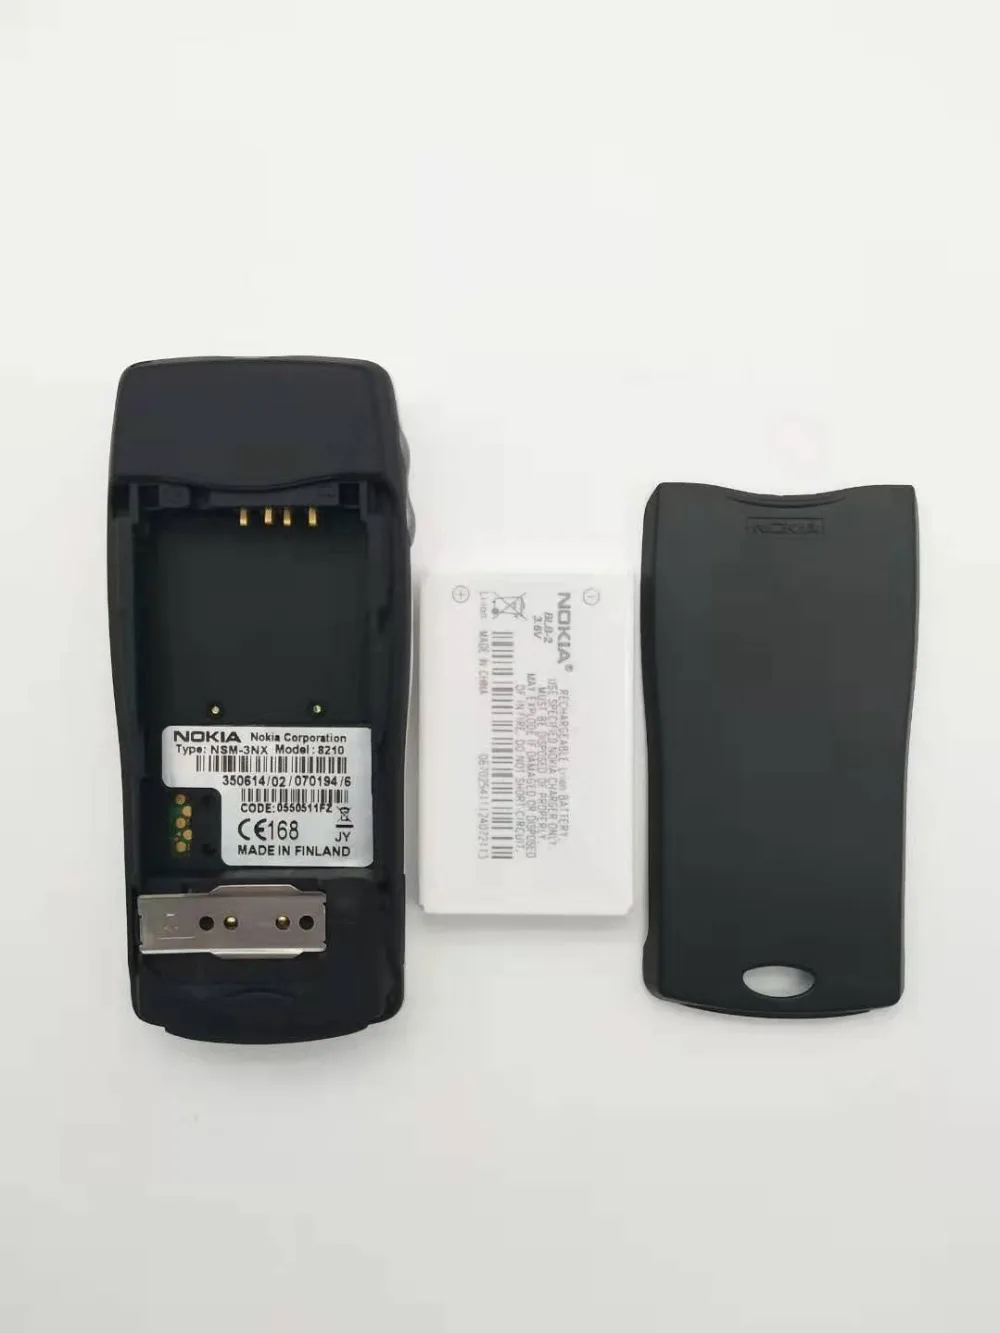 2 шт./лот Nokia 8210 разблокированный мобильный телефон 2G Dualband GSM 900/1800 GPRS Классический дешевый сотовый телефон